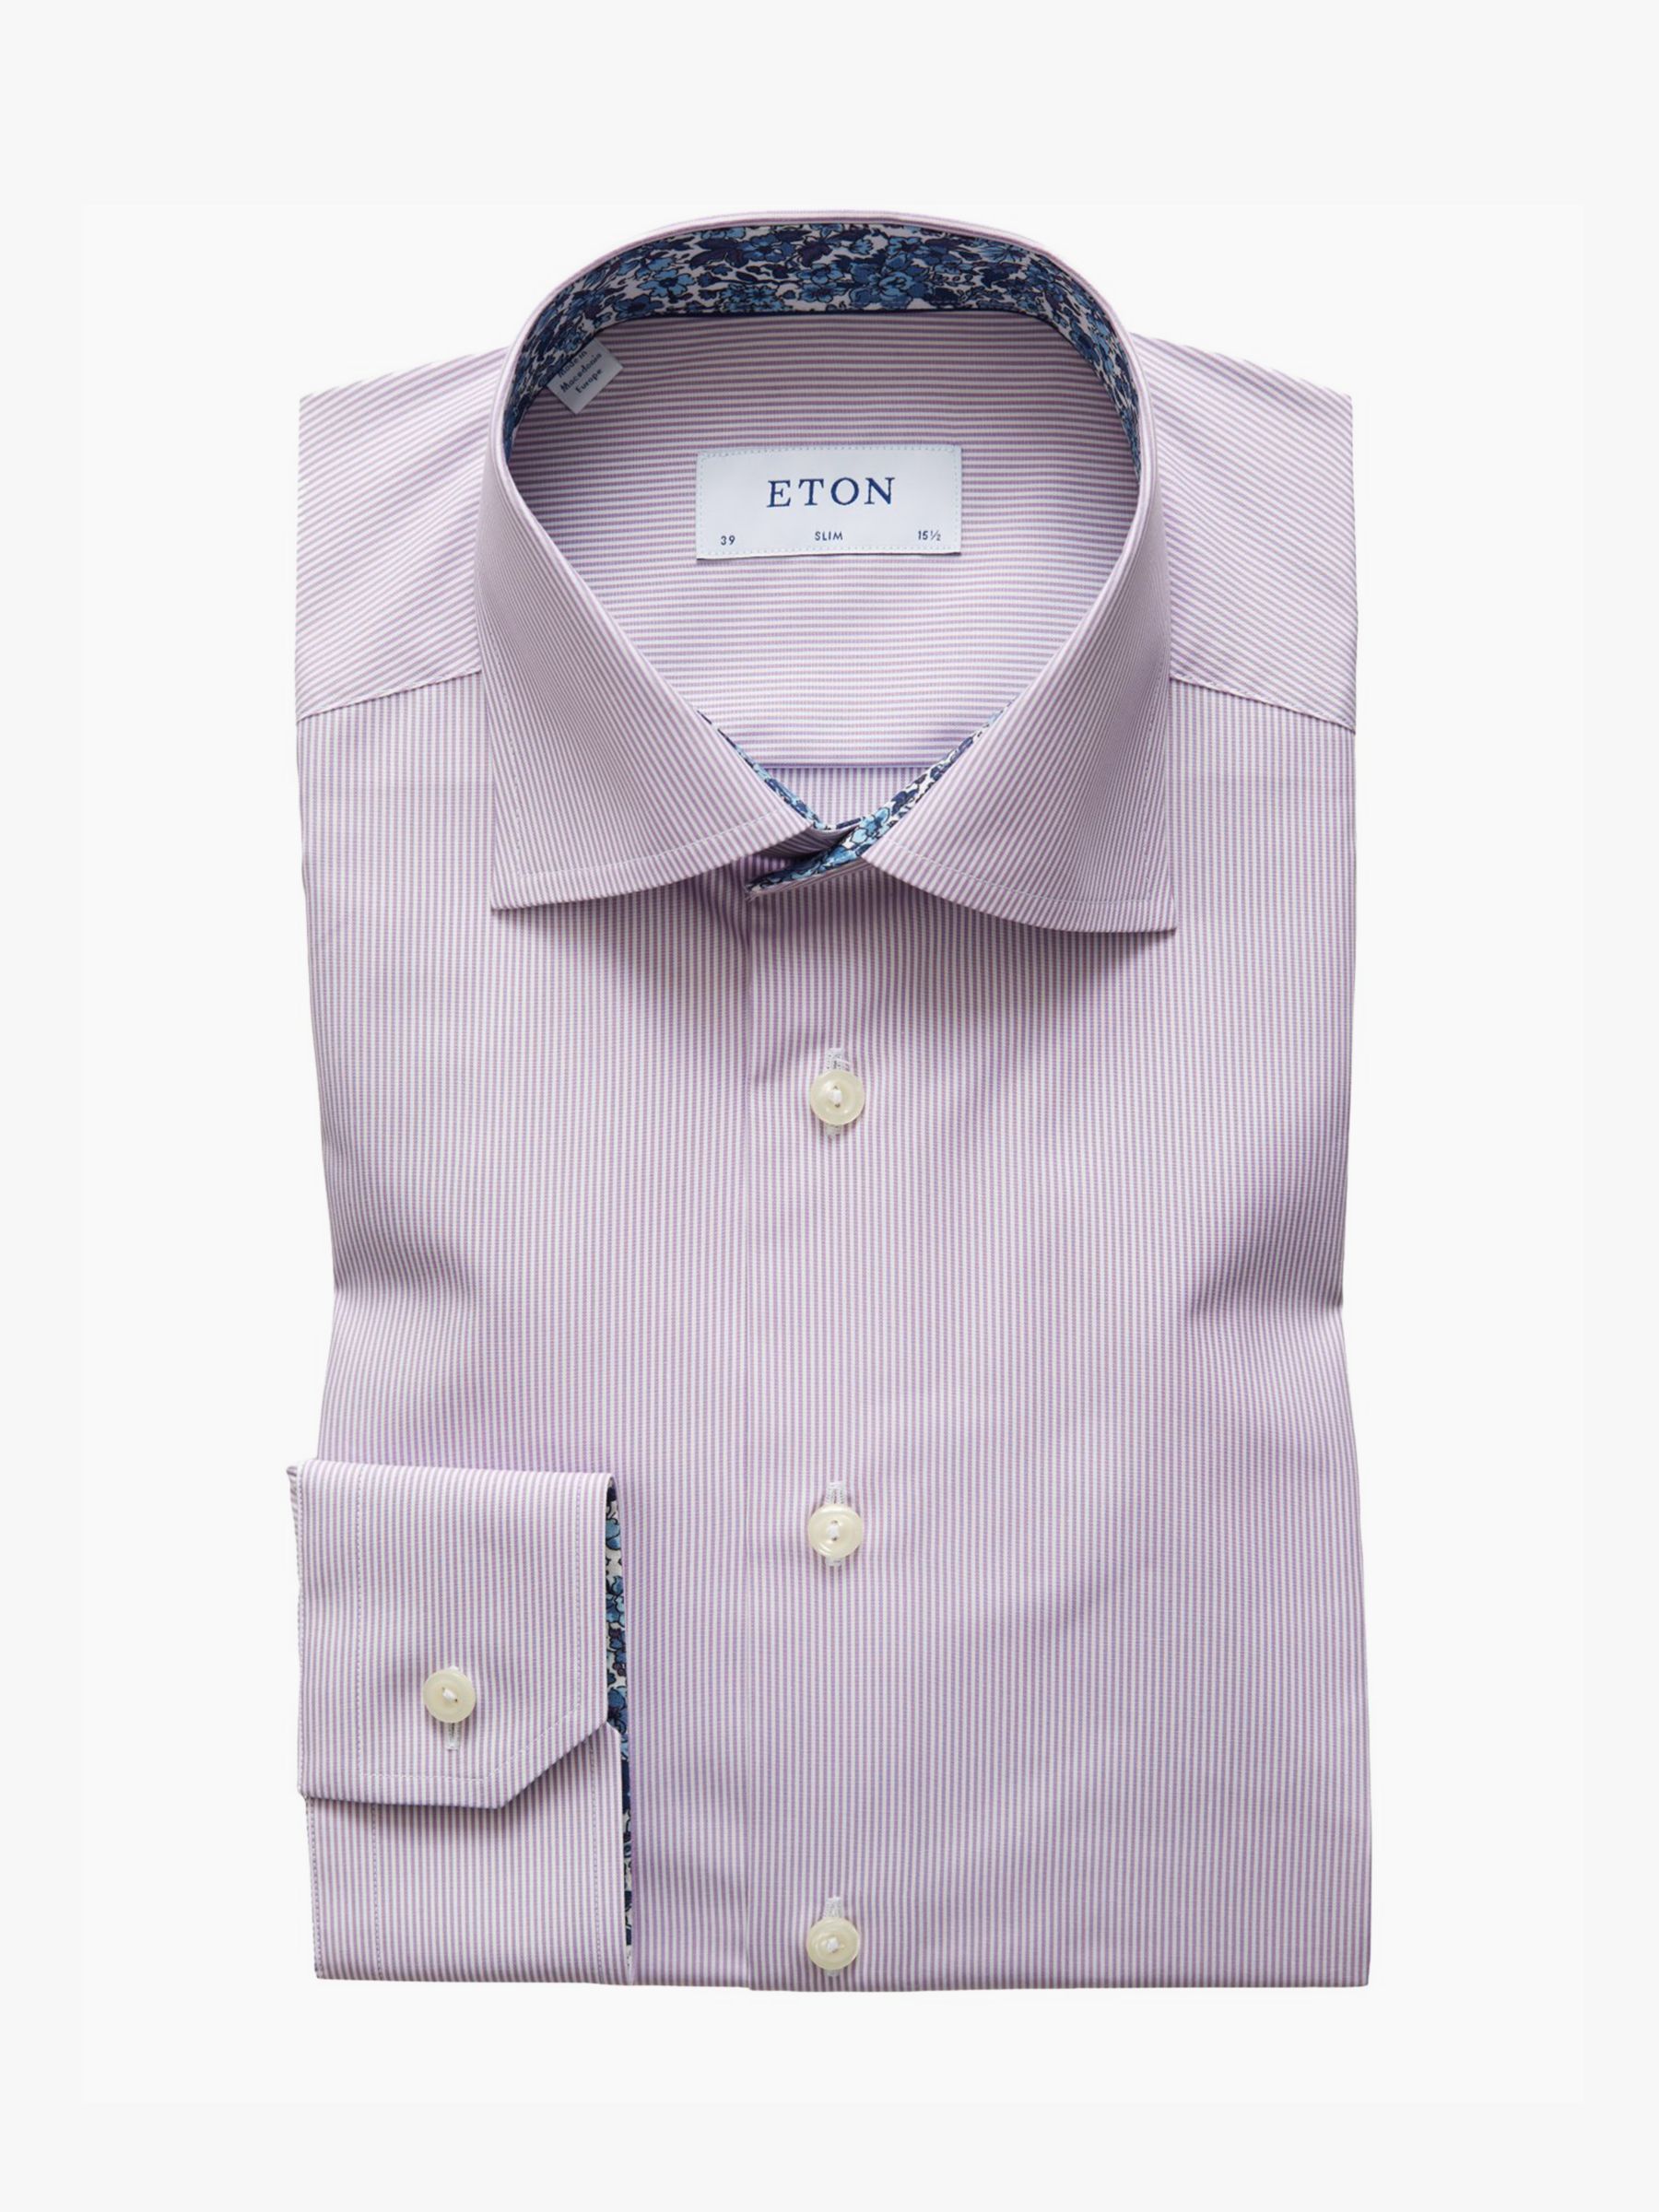 eton - slim fit white signature twill details shirt 10000239600 atterley on eton dress shirts washing instructions